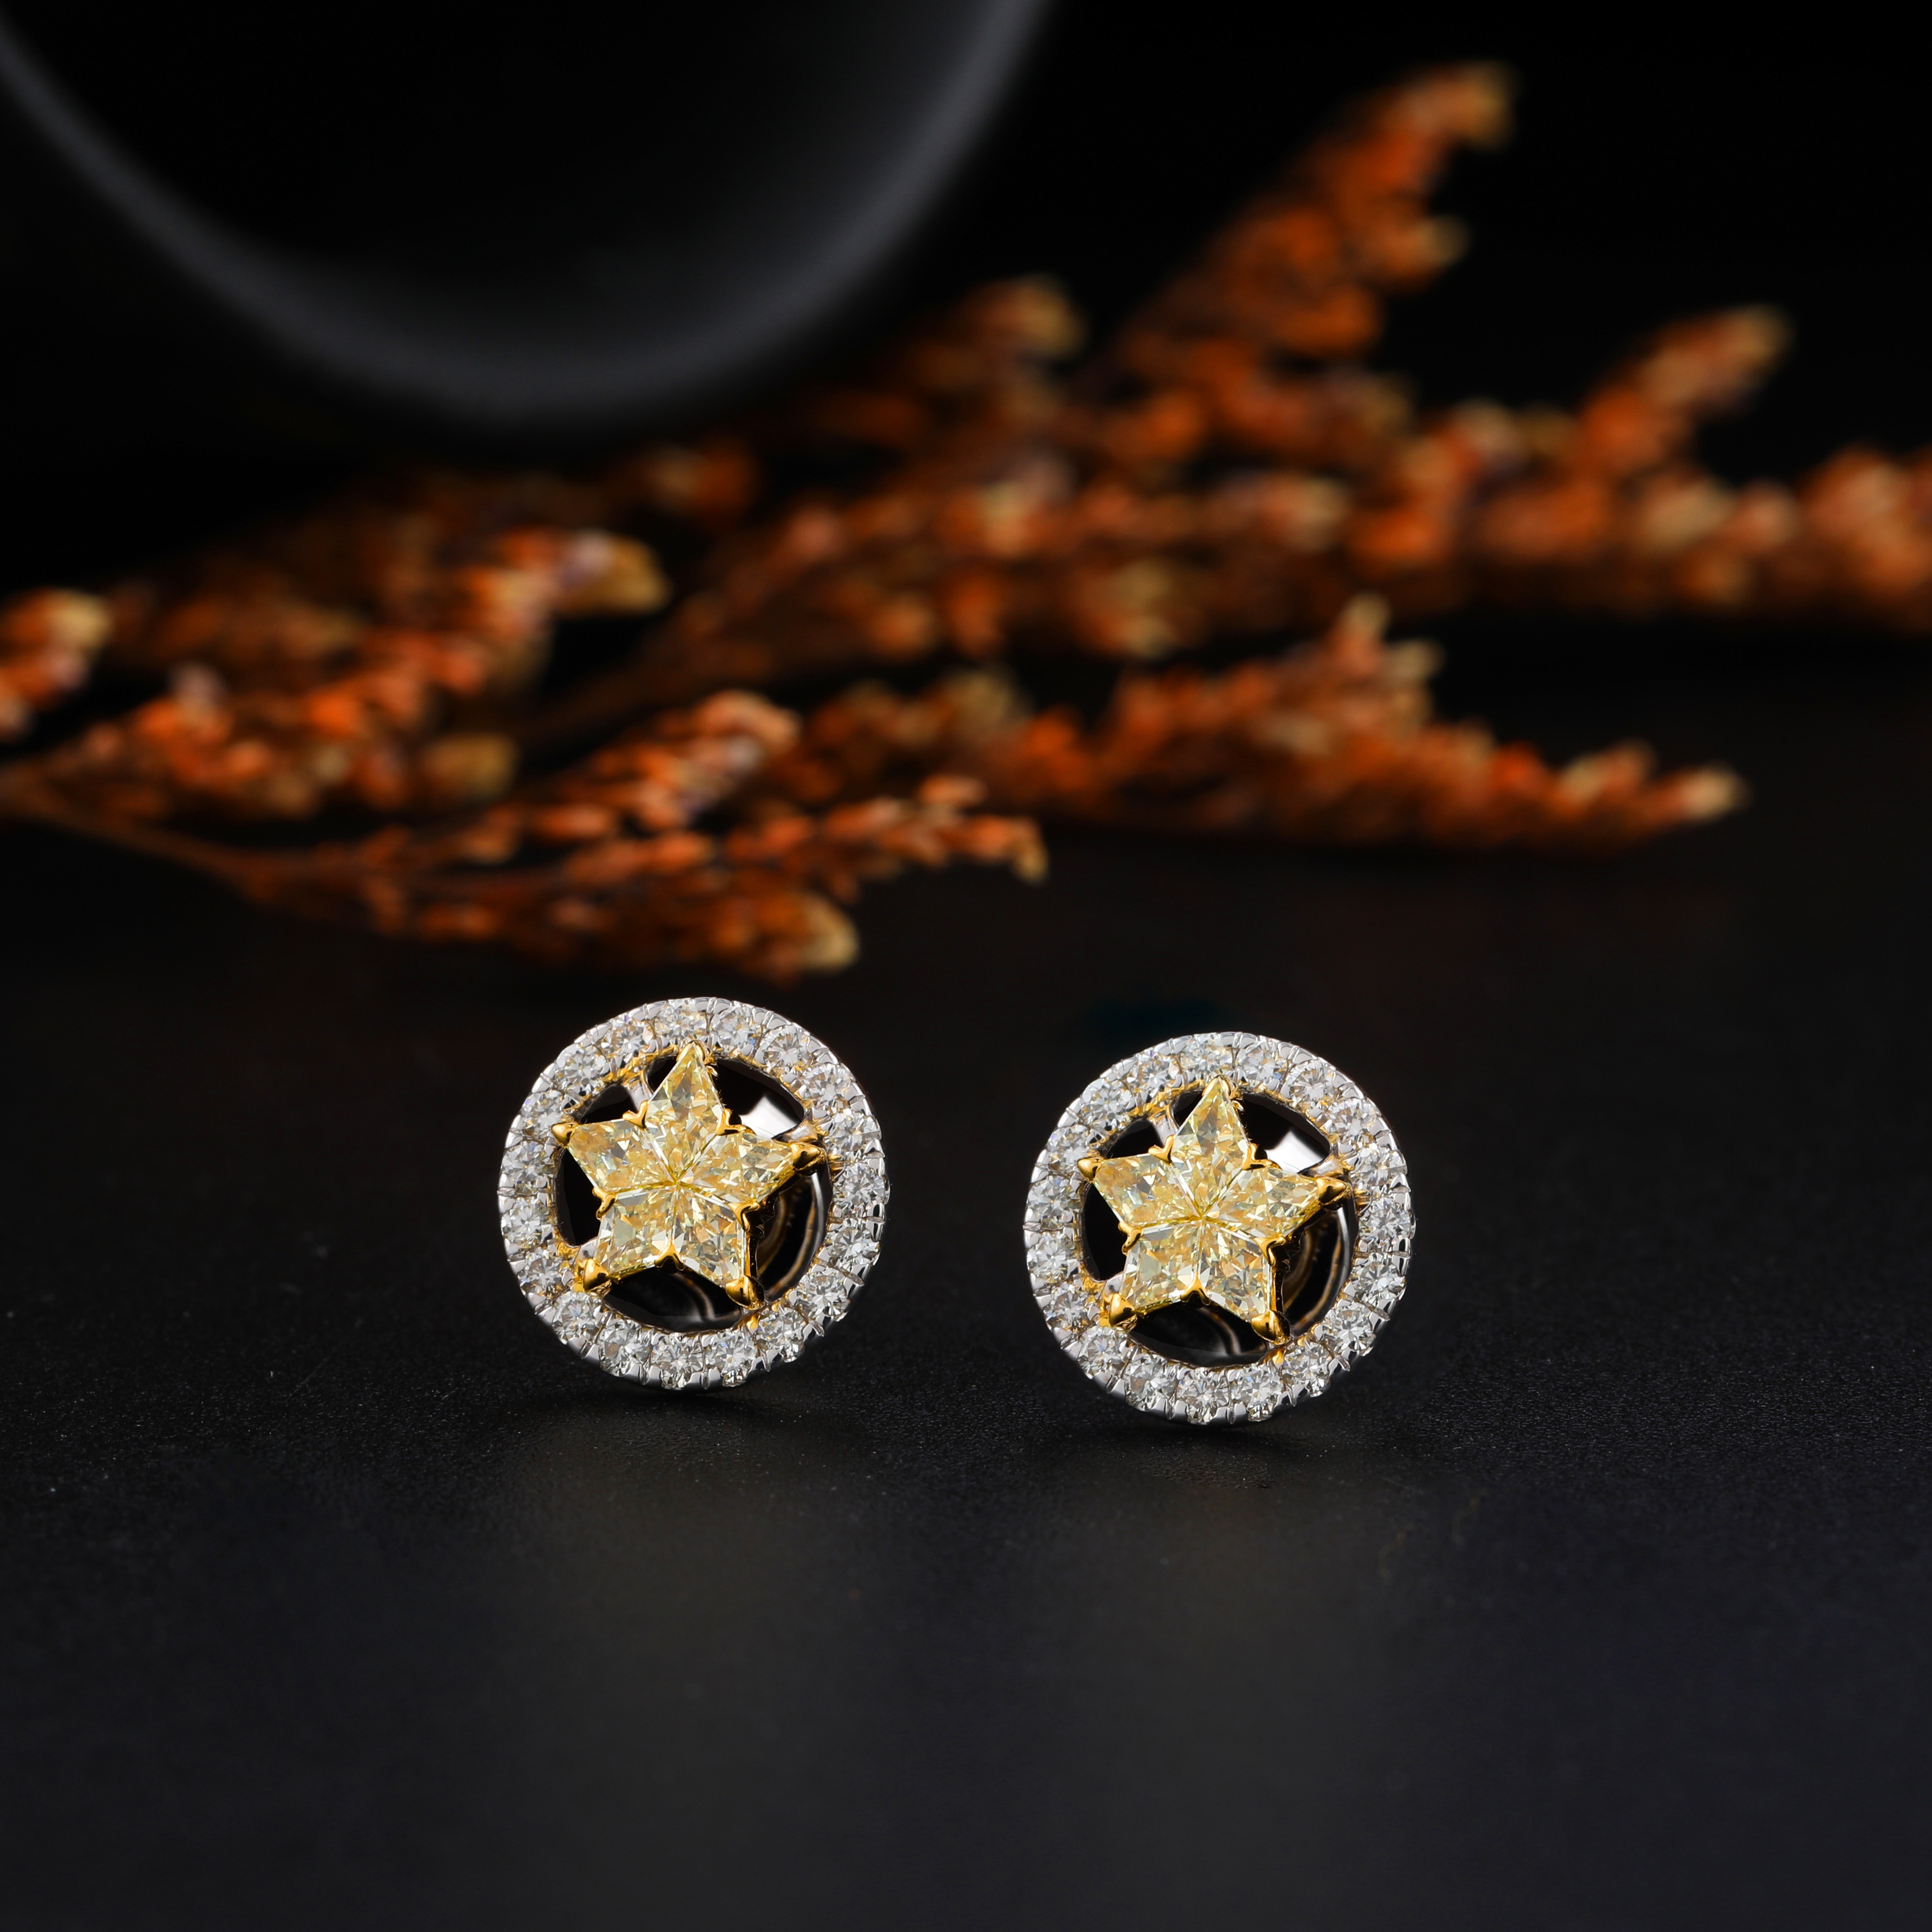 New Fancy Yellow Star Cluster Earrings